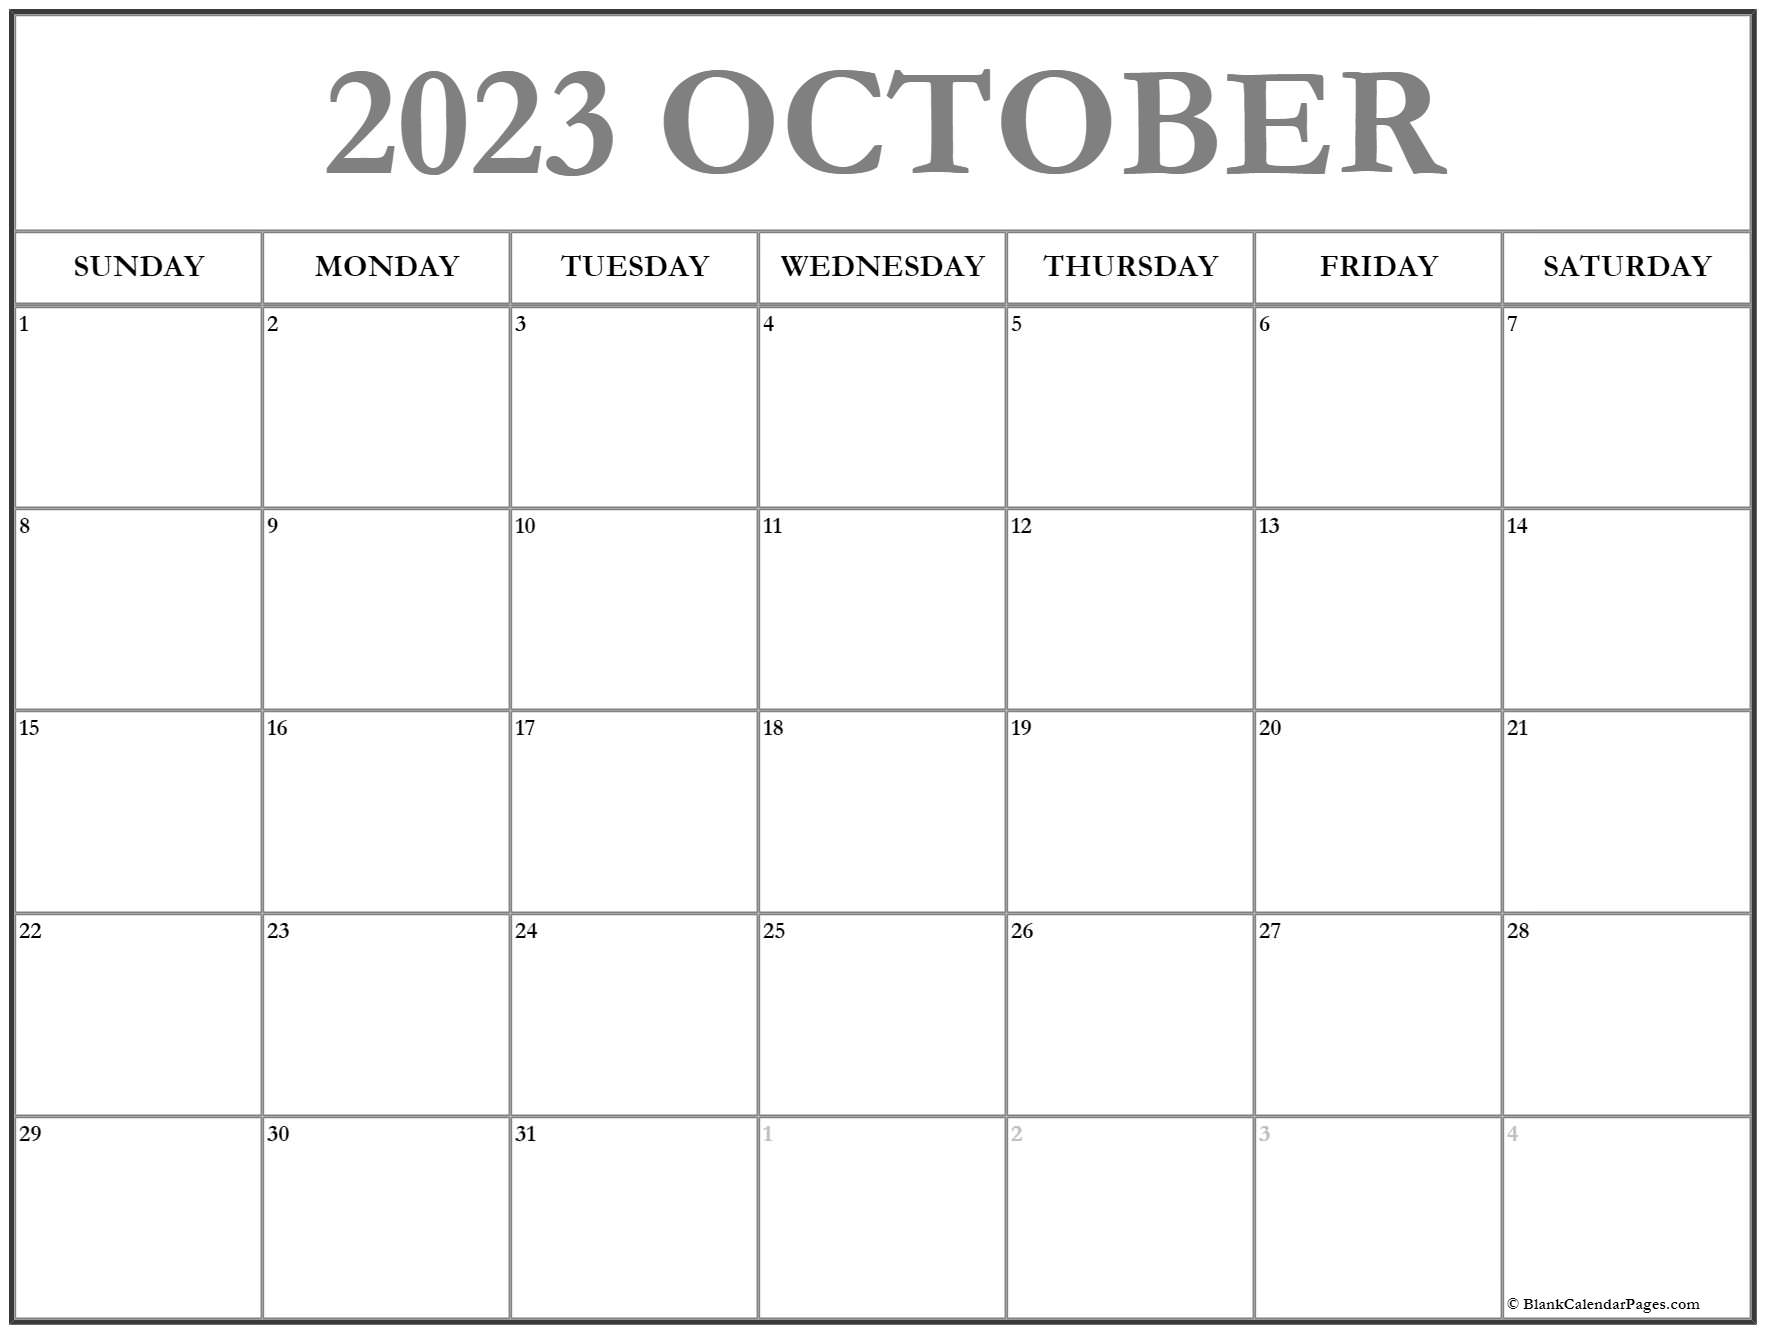 October 2023 calendar free printable calendar